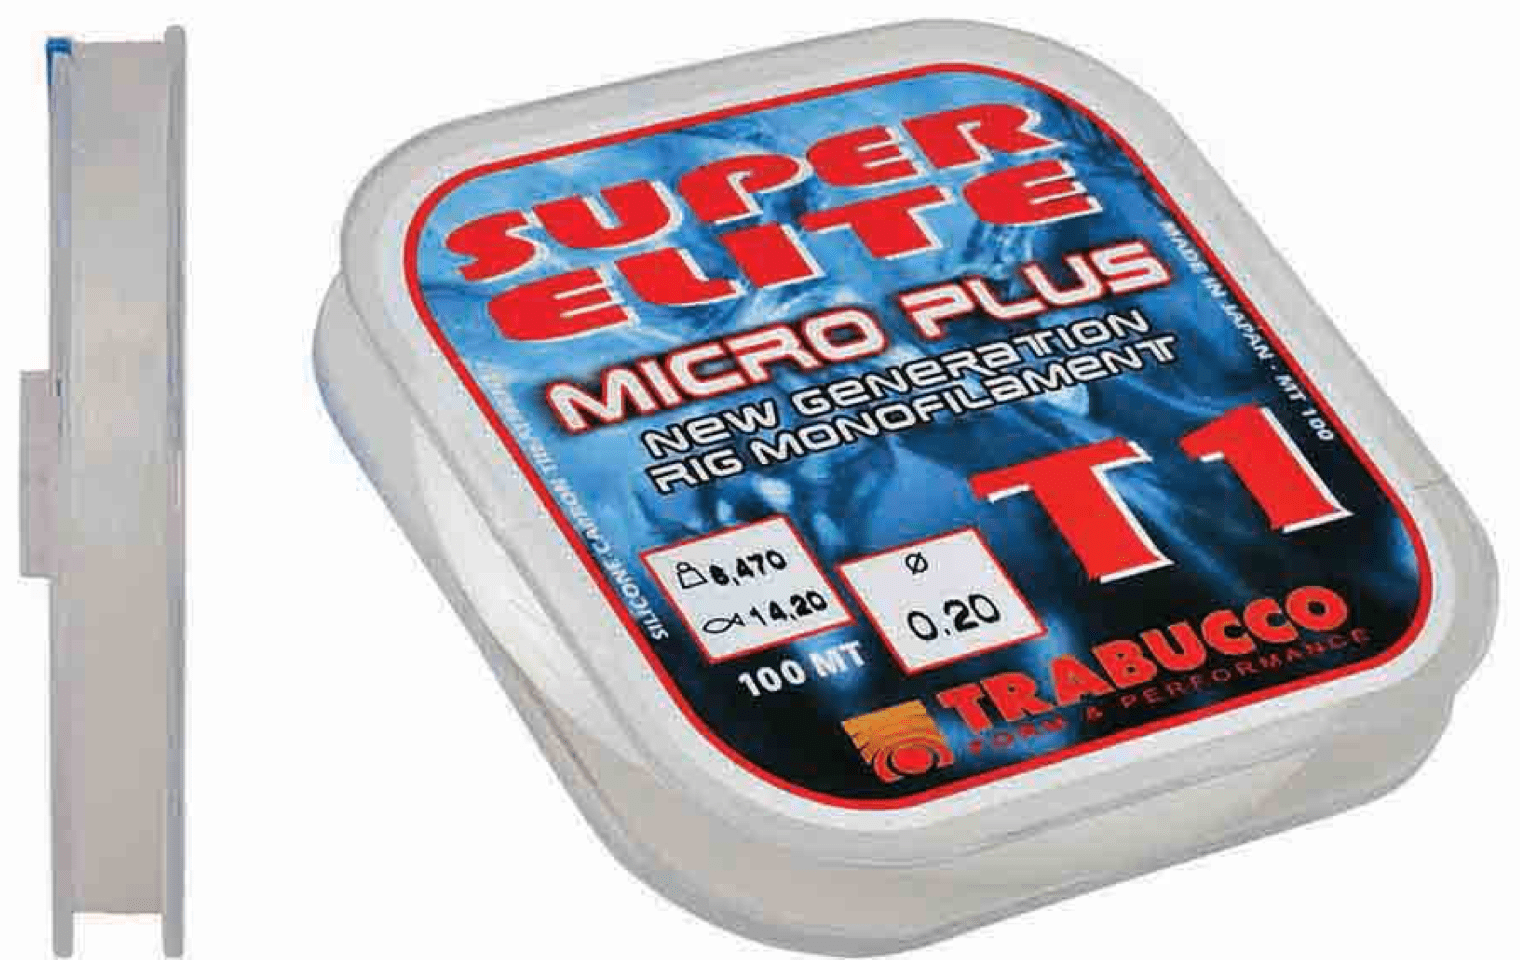 trabucco T1 super elite micro plus 50m